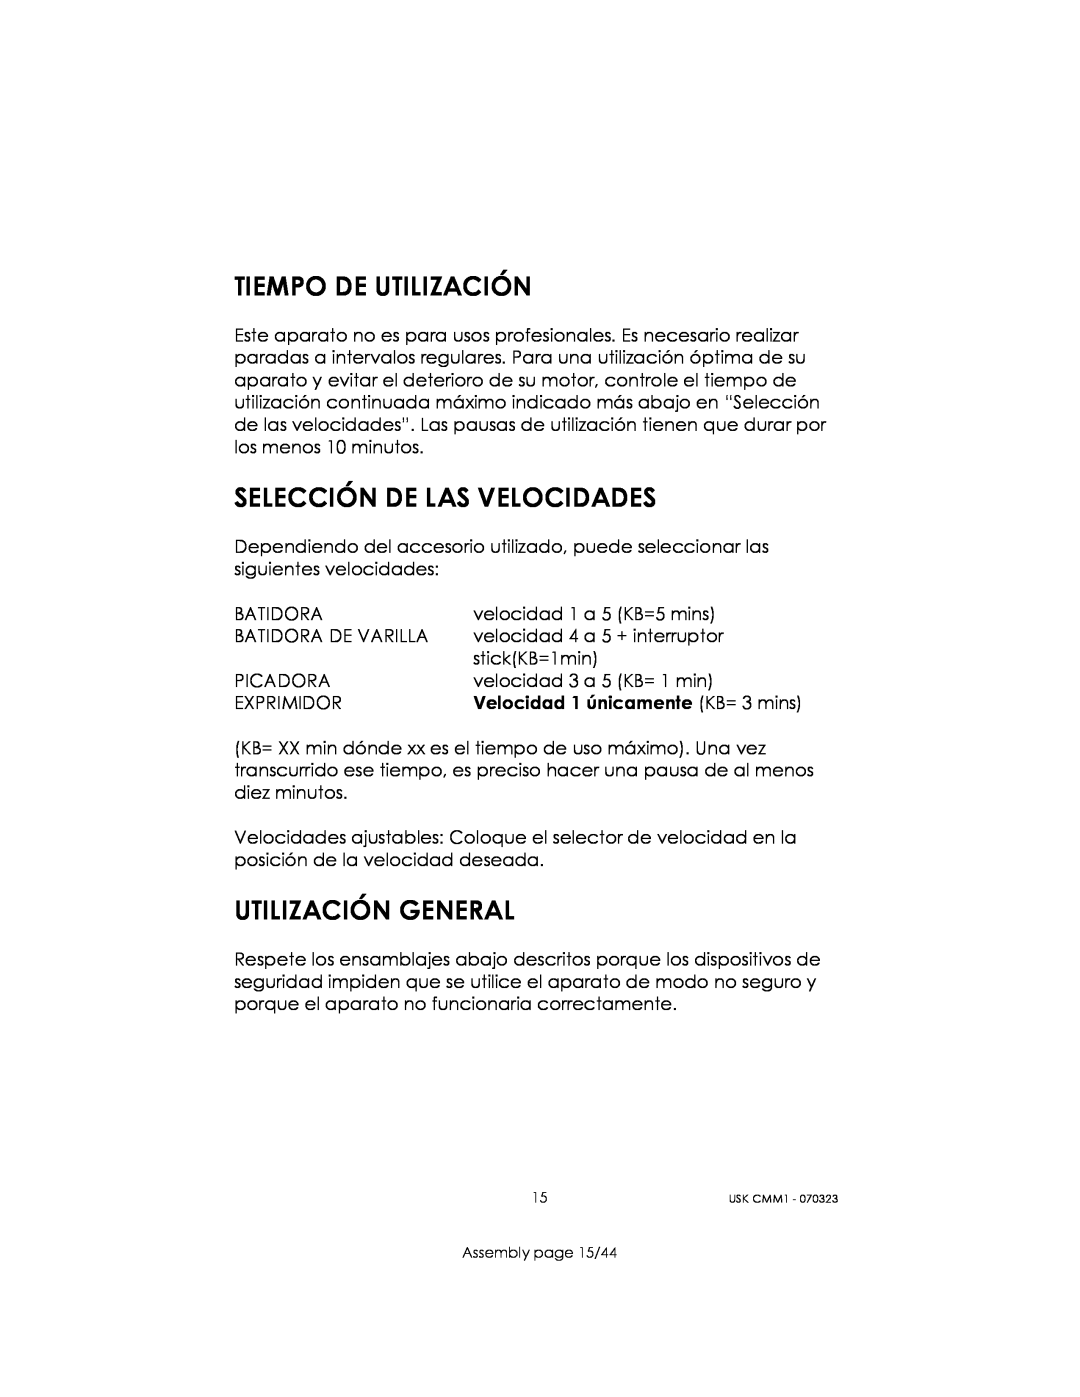 Kalorik USK CMM 1 manual Tiempo De Utilización, Selección De Las Velocidades, Utilización General, Assembly page 15/44 